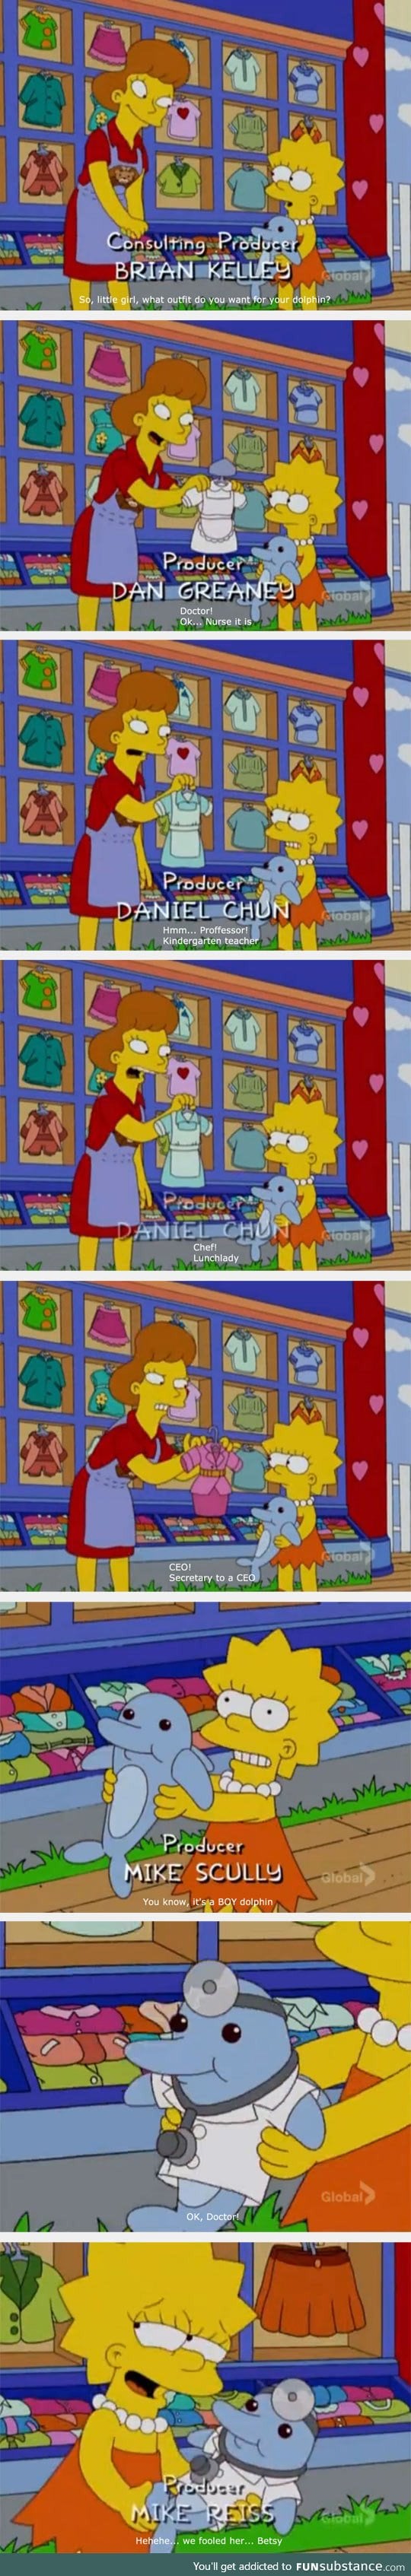 Lisa vs. Gender equality